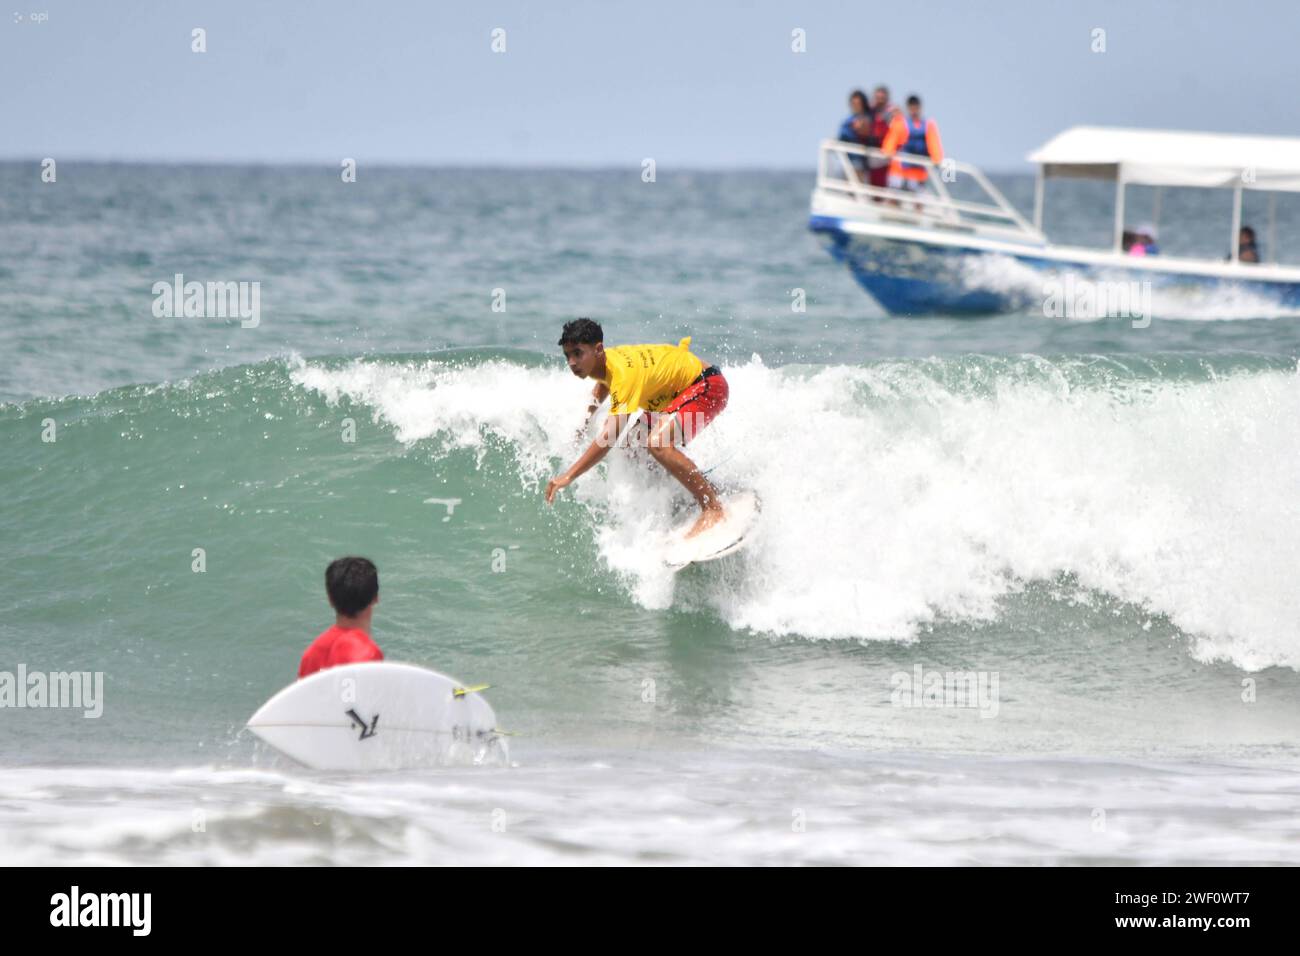 MANTA-SURF-TURISMO-EMERGENCIA-NACIONAL Manta, 27 de enero de 2023. Tras la emergencia de seguridad nacional y el Estado de Excepcion, las playas de Manta de a poco retoman una Mayor presencia de turistas. TambiÃ n se lleva a cabo la primera edicion del Manta Pro Surf 2024, organisado por la Liga Pro de Surf y que espera llevar esta competencia a diferentes playas de Ecuador. API / Ariel OCHOA Manta Manabi Ecuador SOI-MANTA-SURF-TURISMO-EMERGENCIA-NACIONAL-5c0767abde61c4225872ab5aaa5713b66 *** MANTA SURF TOURISMUS NATIONALE NOTFALL Manta, 27. Januar 2023 nach der nationalen Sicherheit NOTFALL und Stockfoto